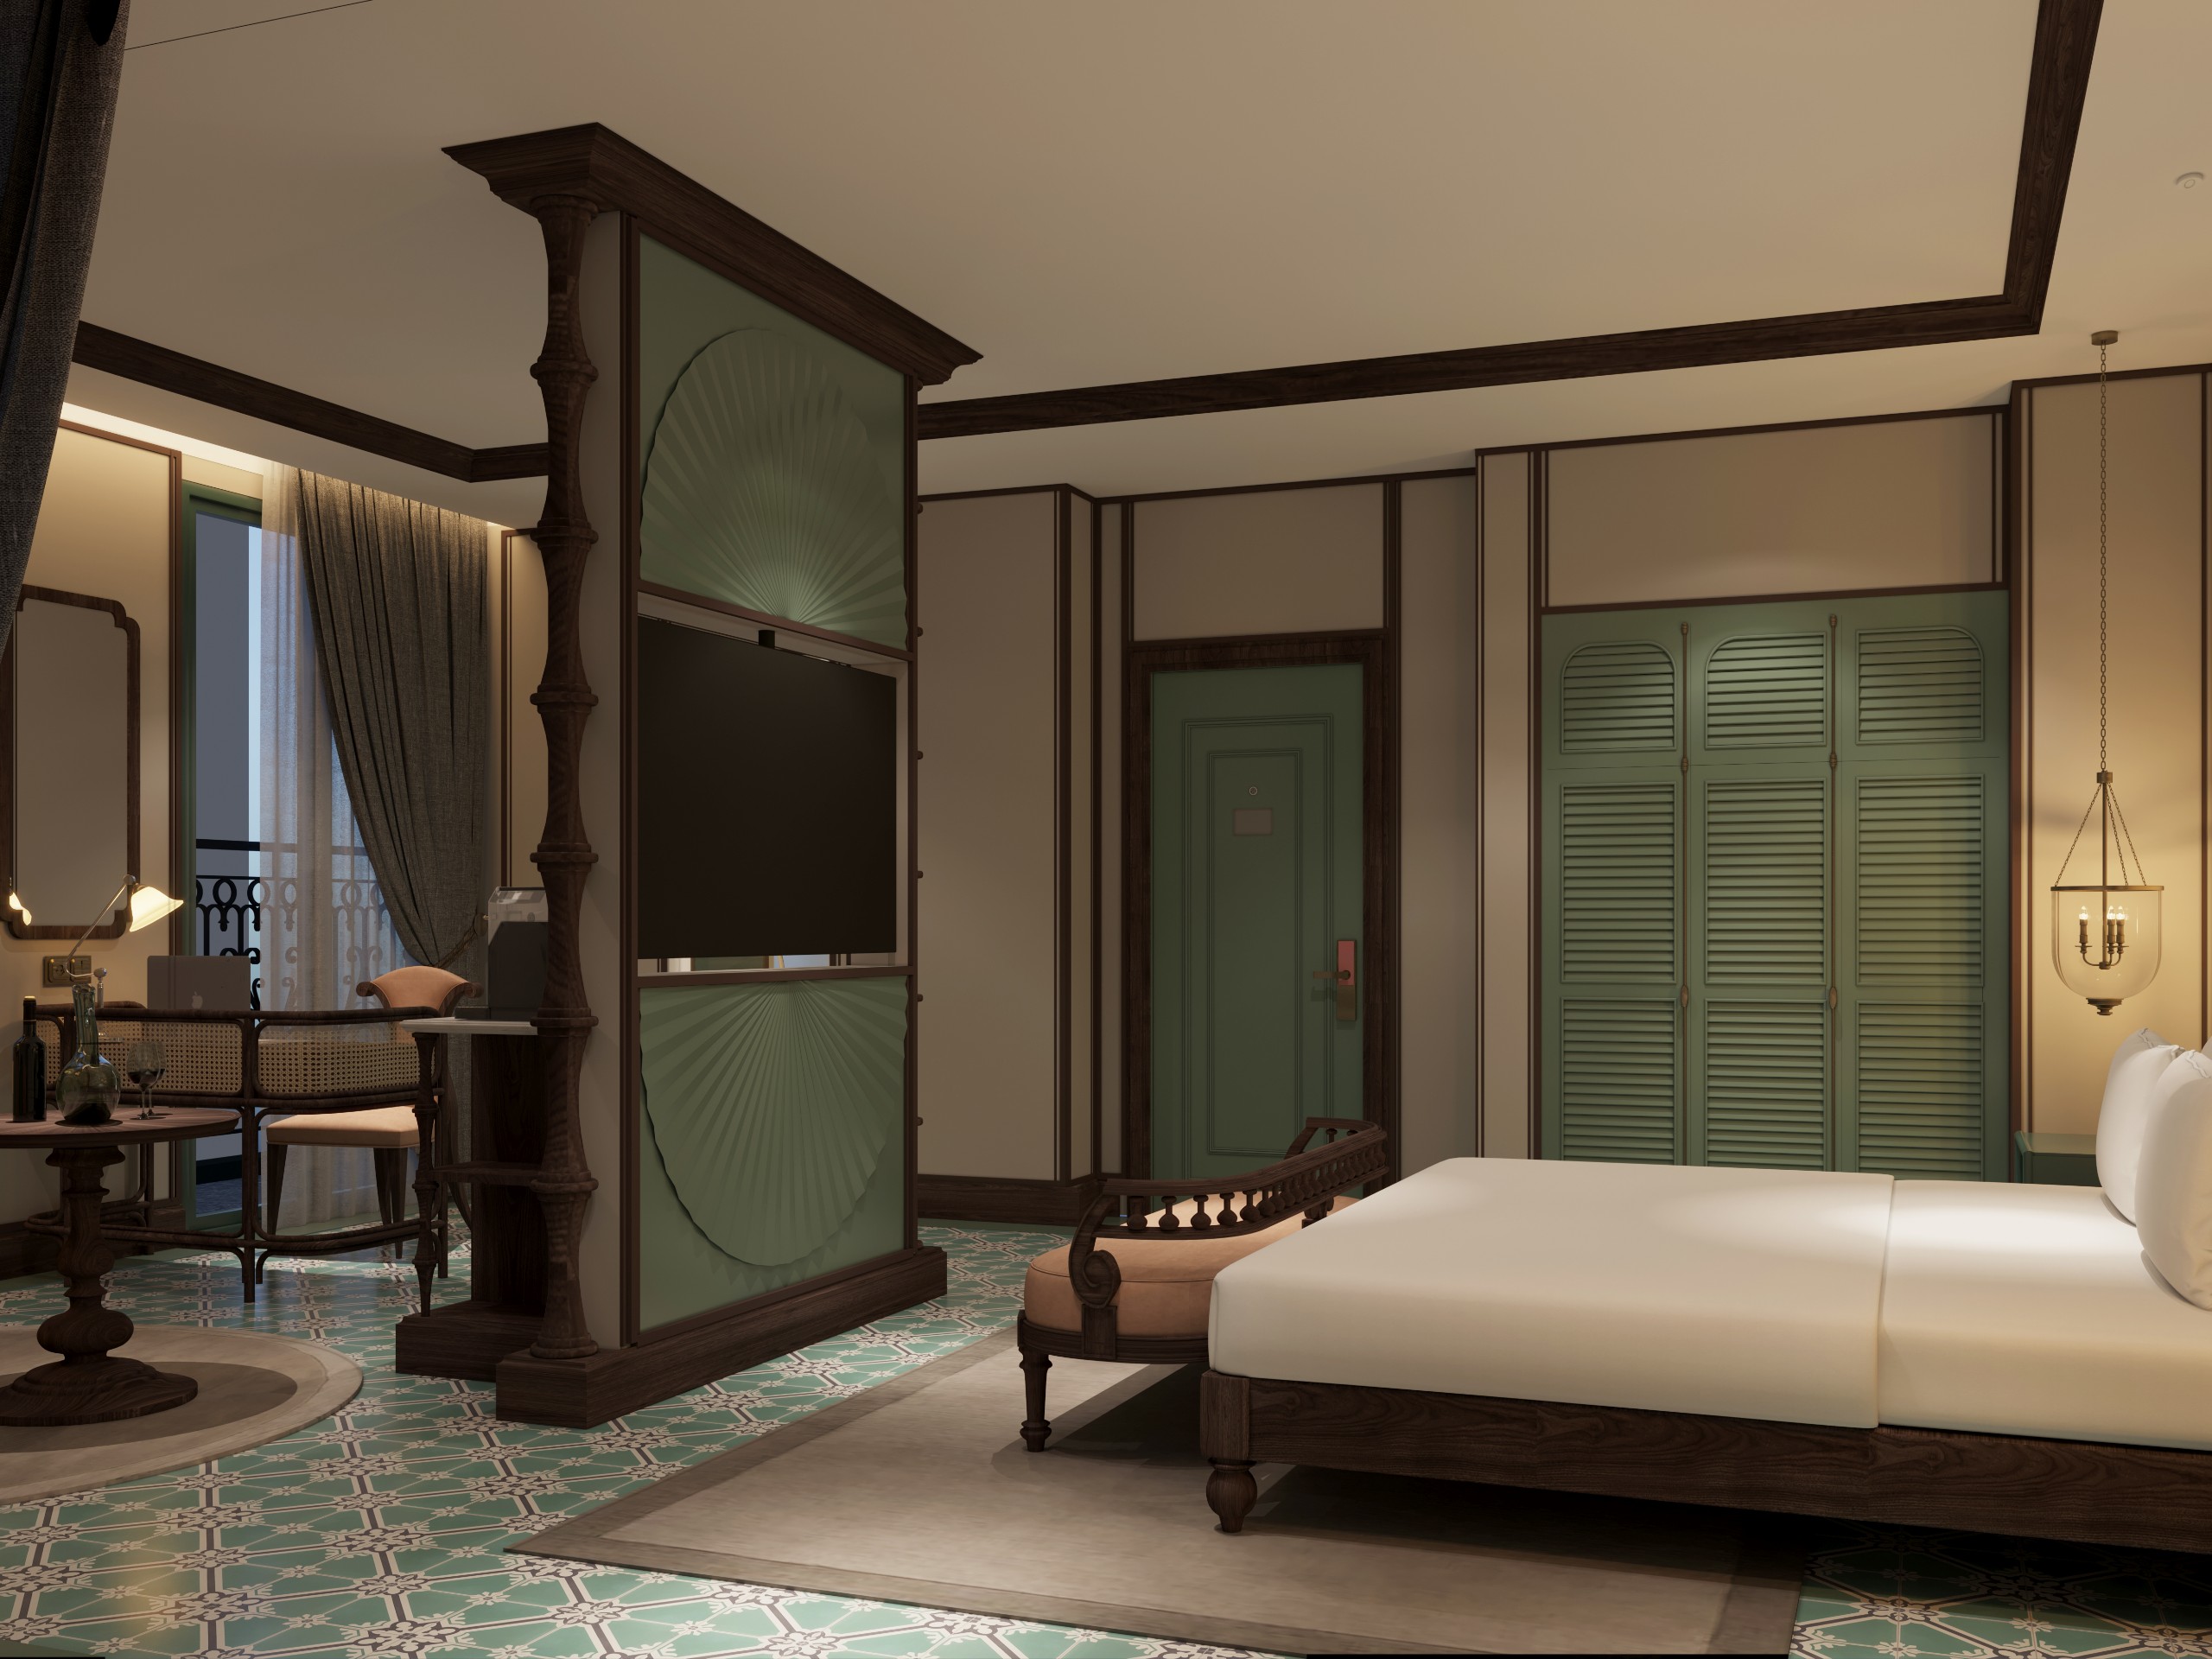 Khách Sạn 12 phòng mặt tiền Biển Bảo Ninh LH: 0934571866 (vy)